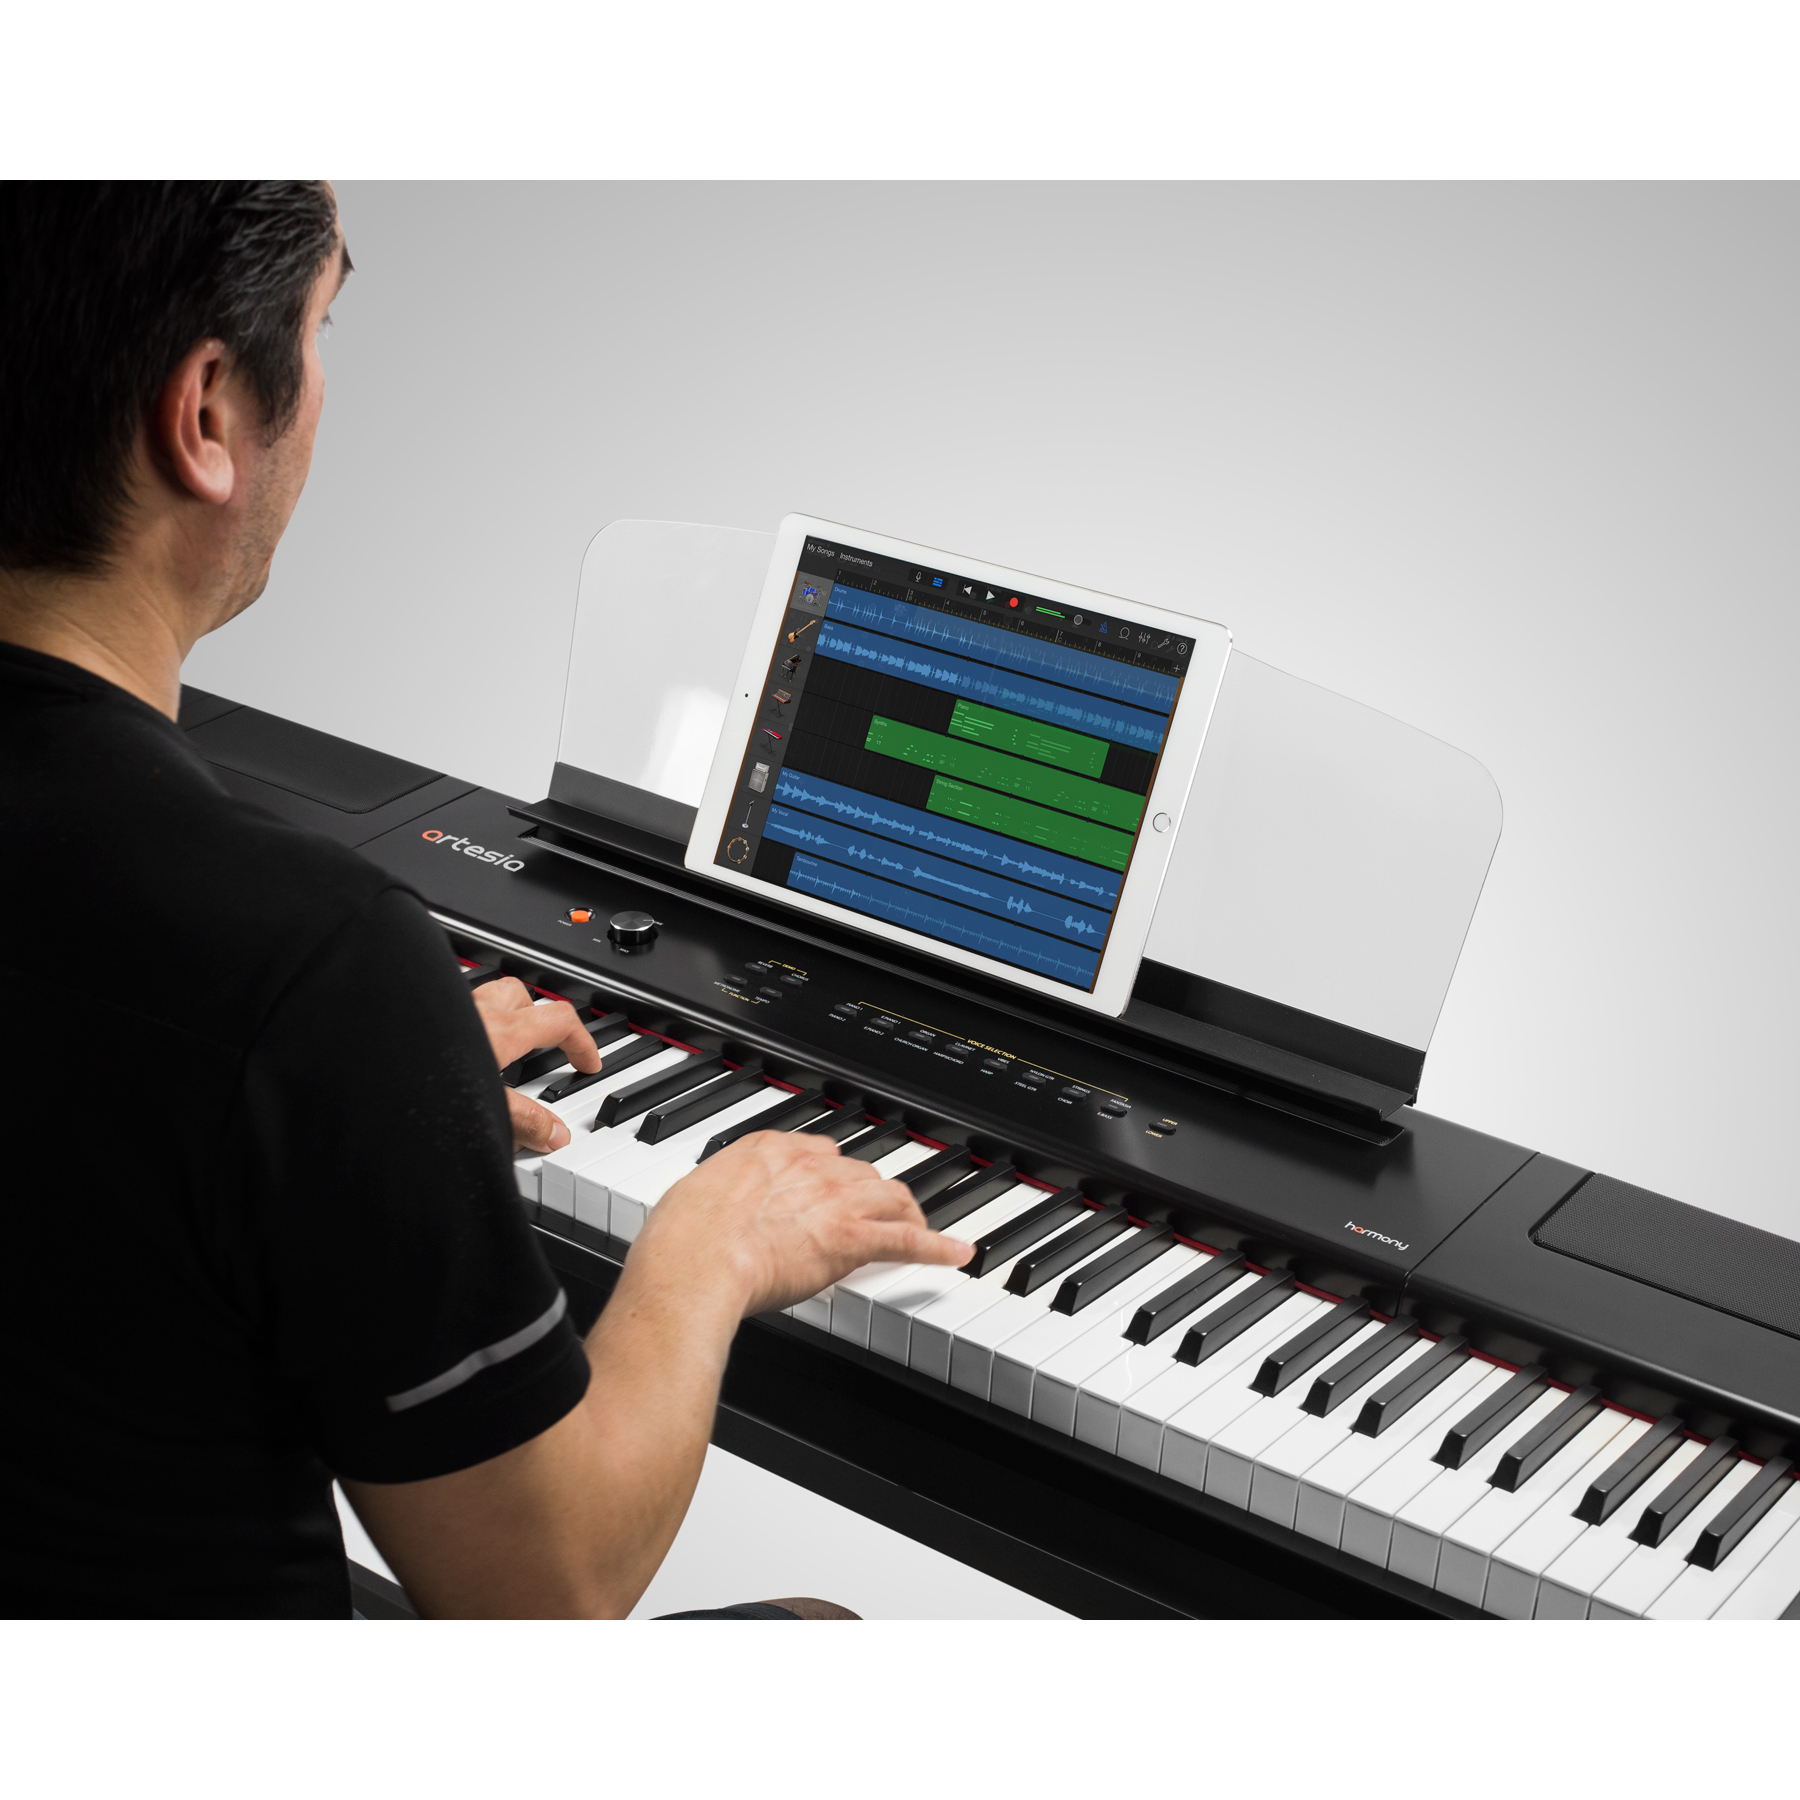 Đàn Piano điện cao cấp/ Home Digital Piano - Artesia Harmony - Weighted, hammer action keys - Màu đen (BL)